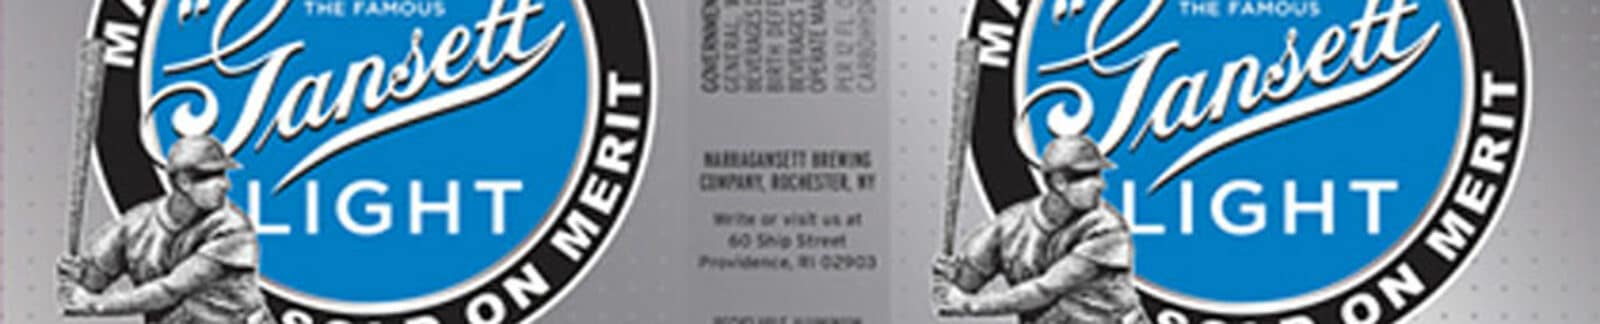 Narragansett Beer header